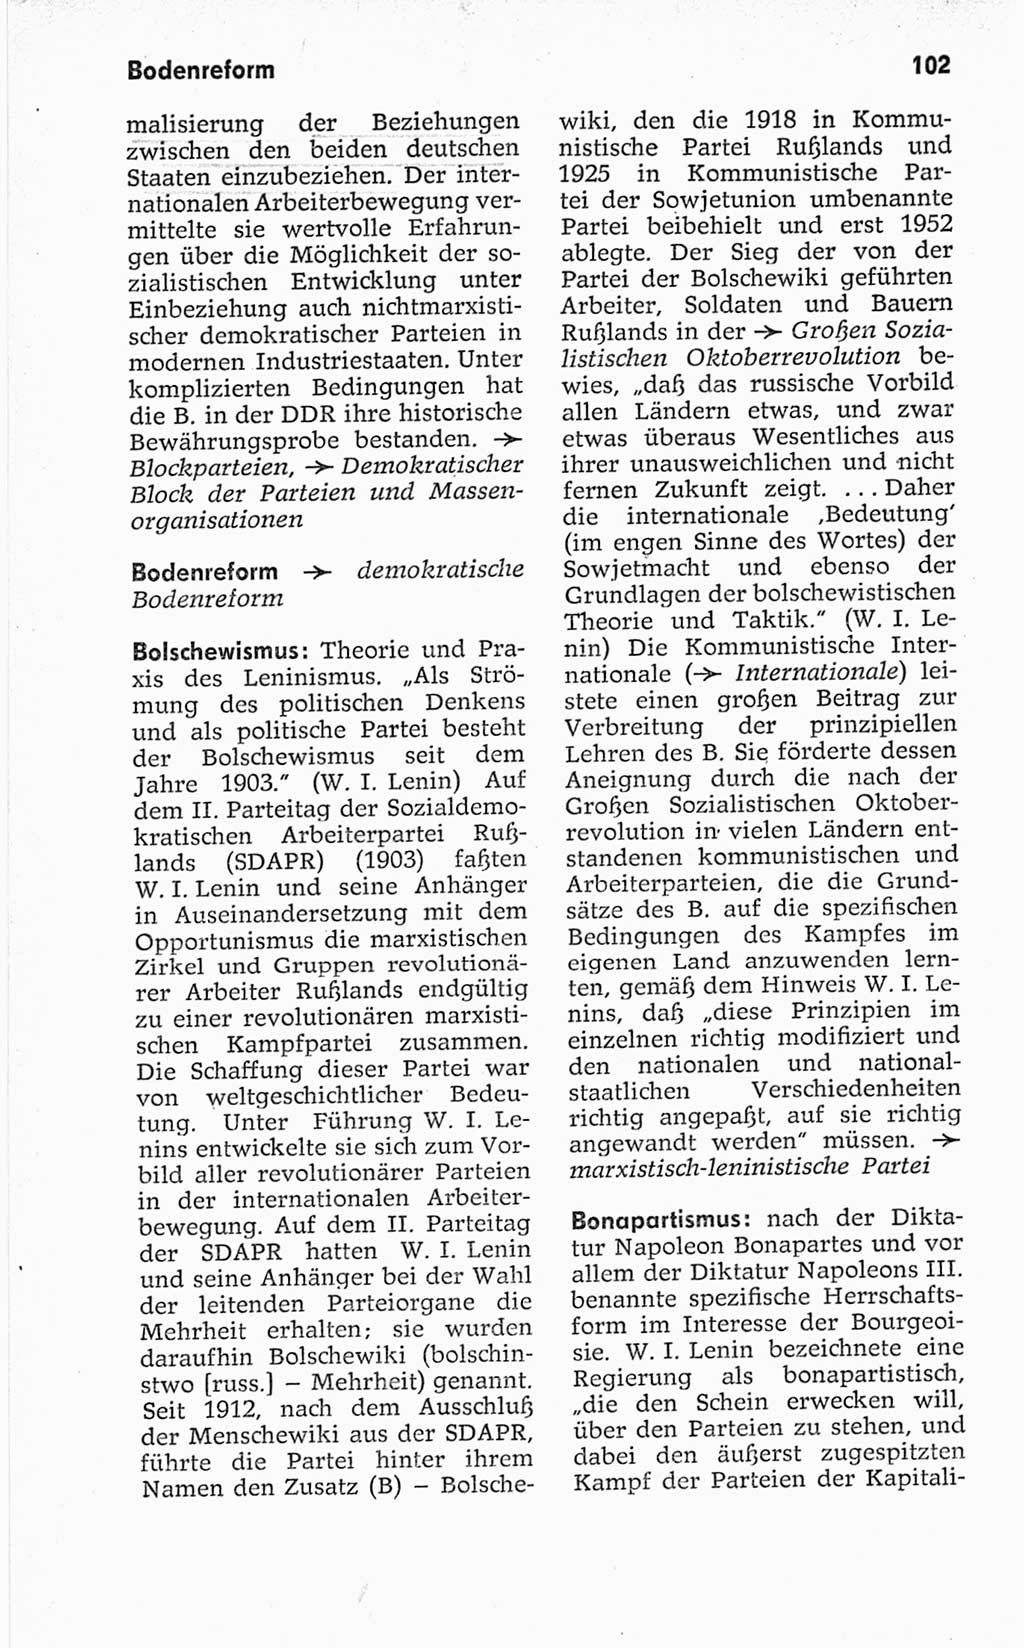 Kleines politisches Wörterbuch [Deutsche Demokratische Republik (DDR)] 1967, Seite 102 (Kl. pol. Wb. DDR 1967, S. 102)